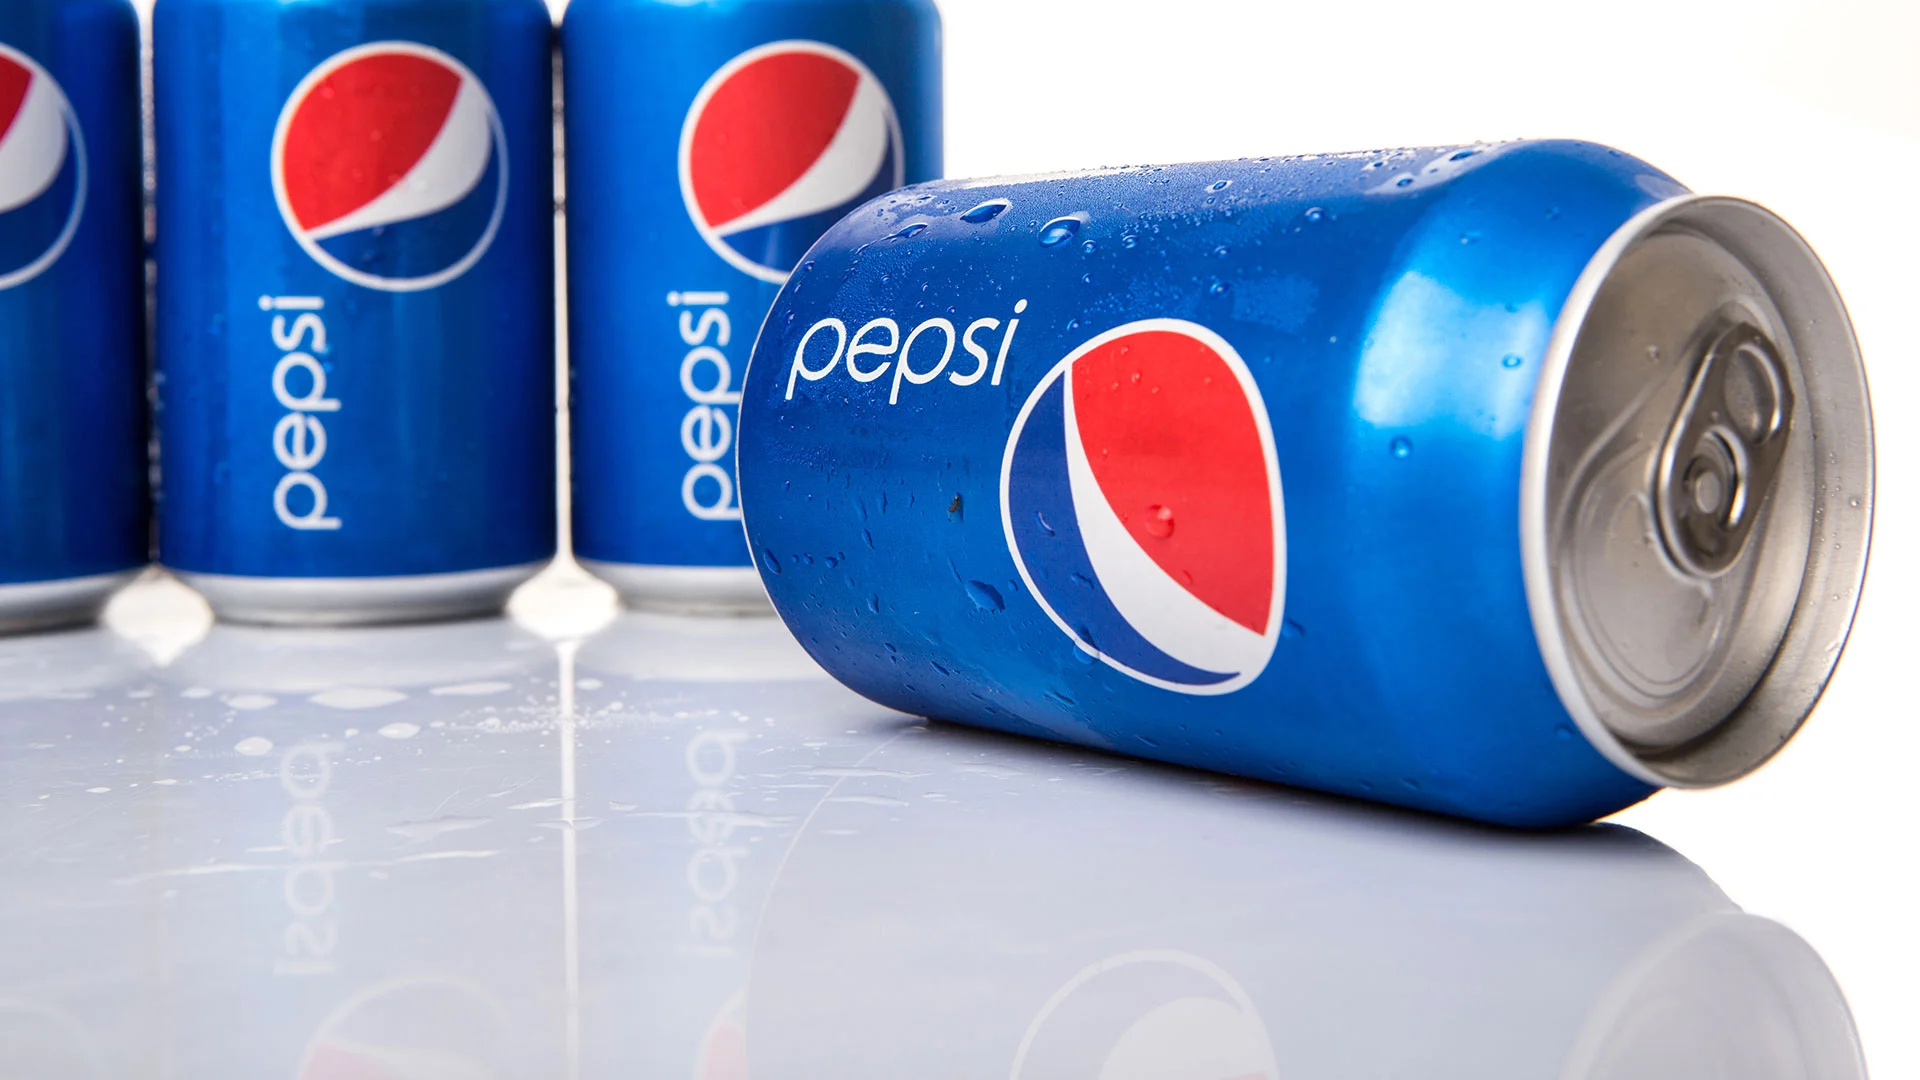 Jetzt kaufen oder verkaufen? PepsiCo&#8209;Aktie sinkt trotz höherer Dividende und Aktienrückkauf (Foto: Shutterstock)